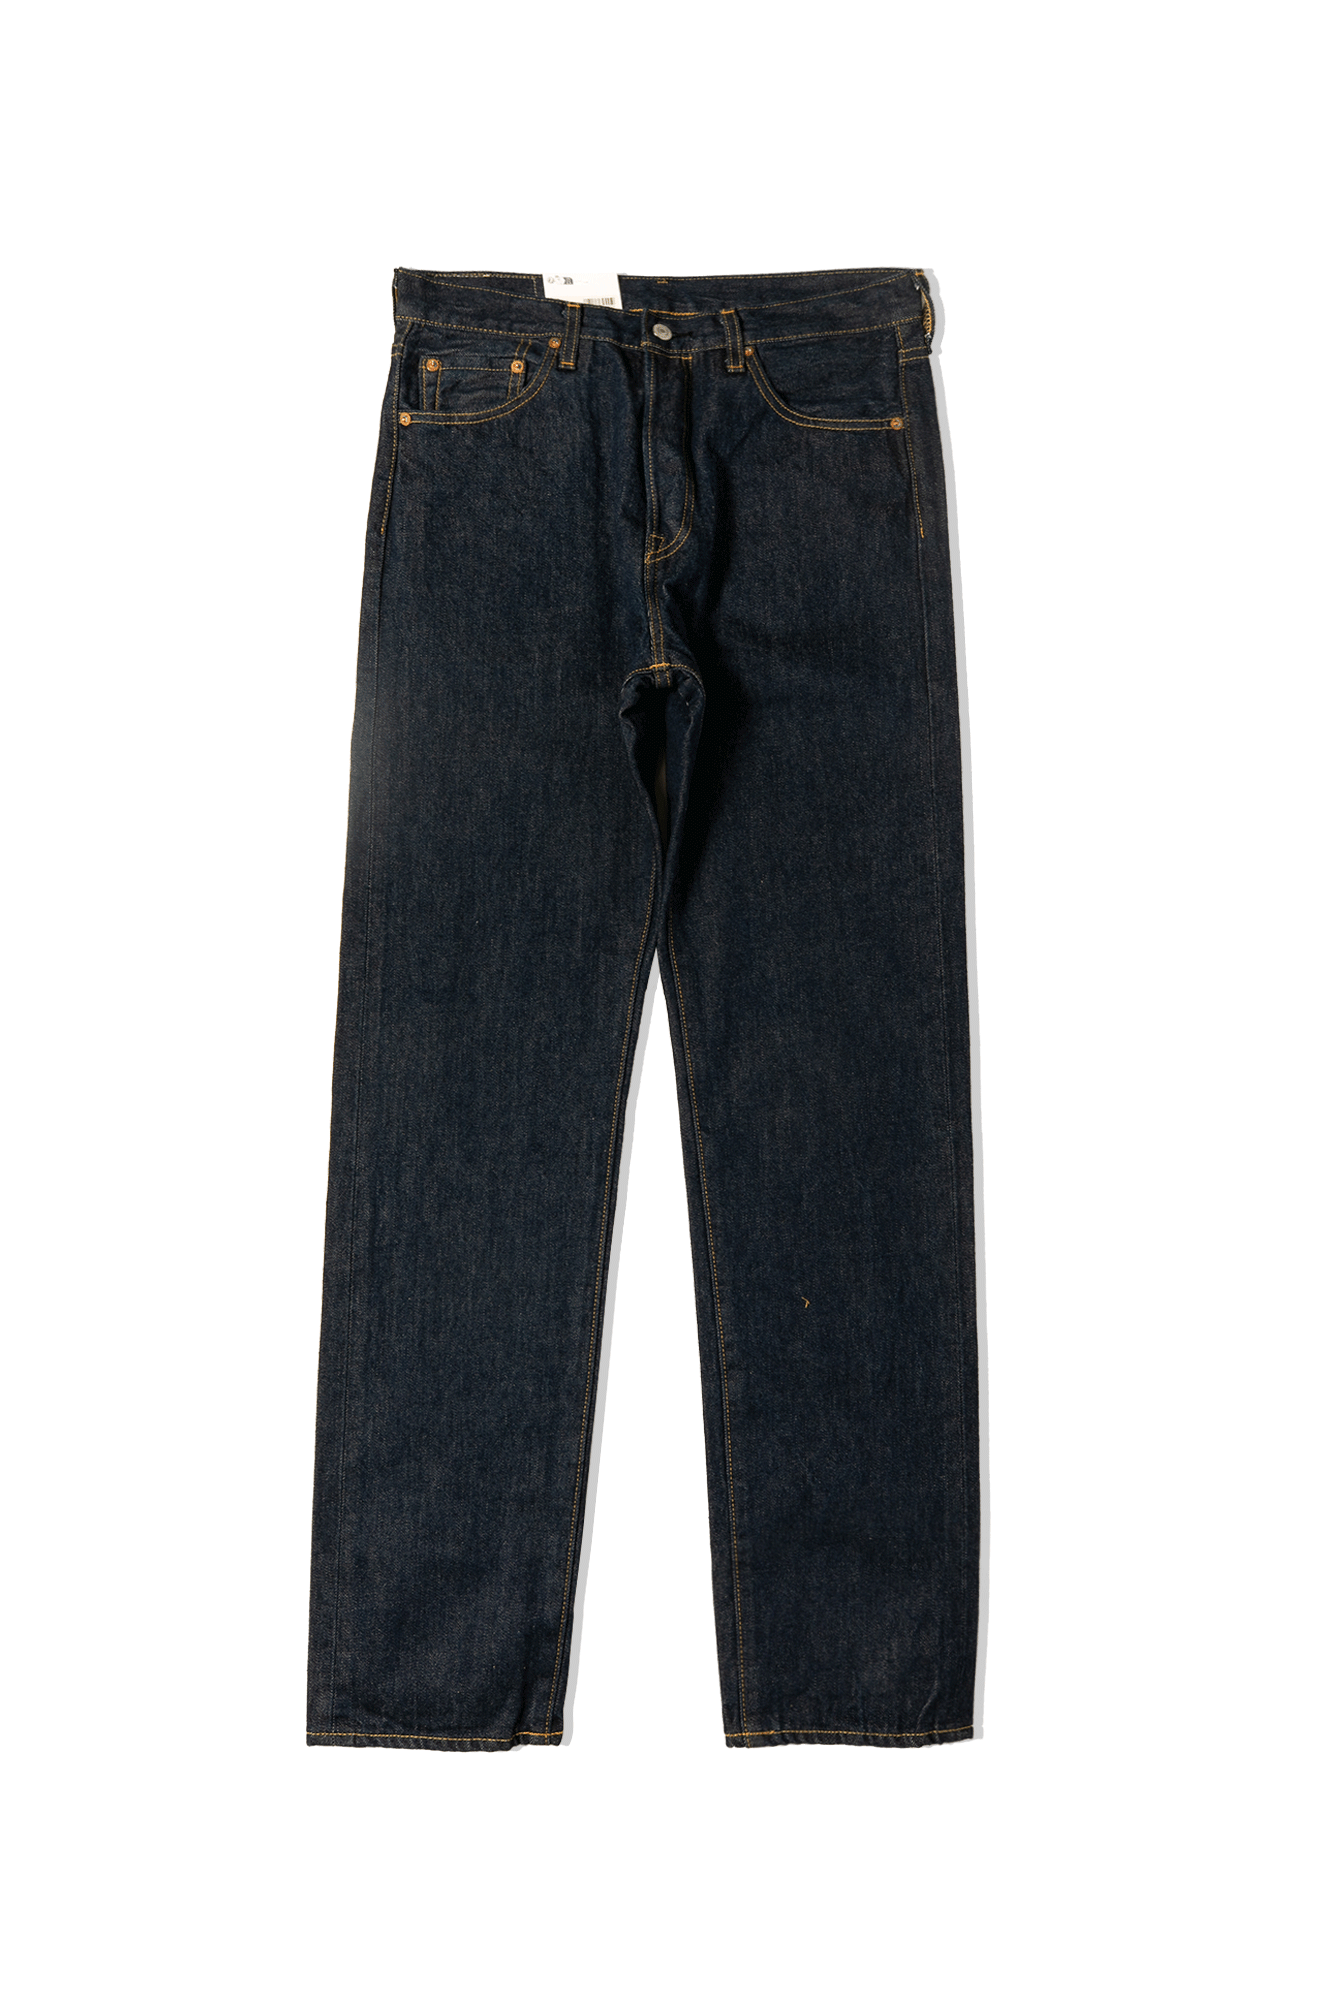 1980S 501